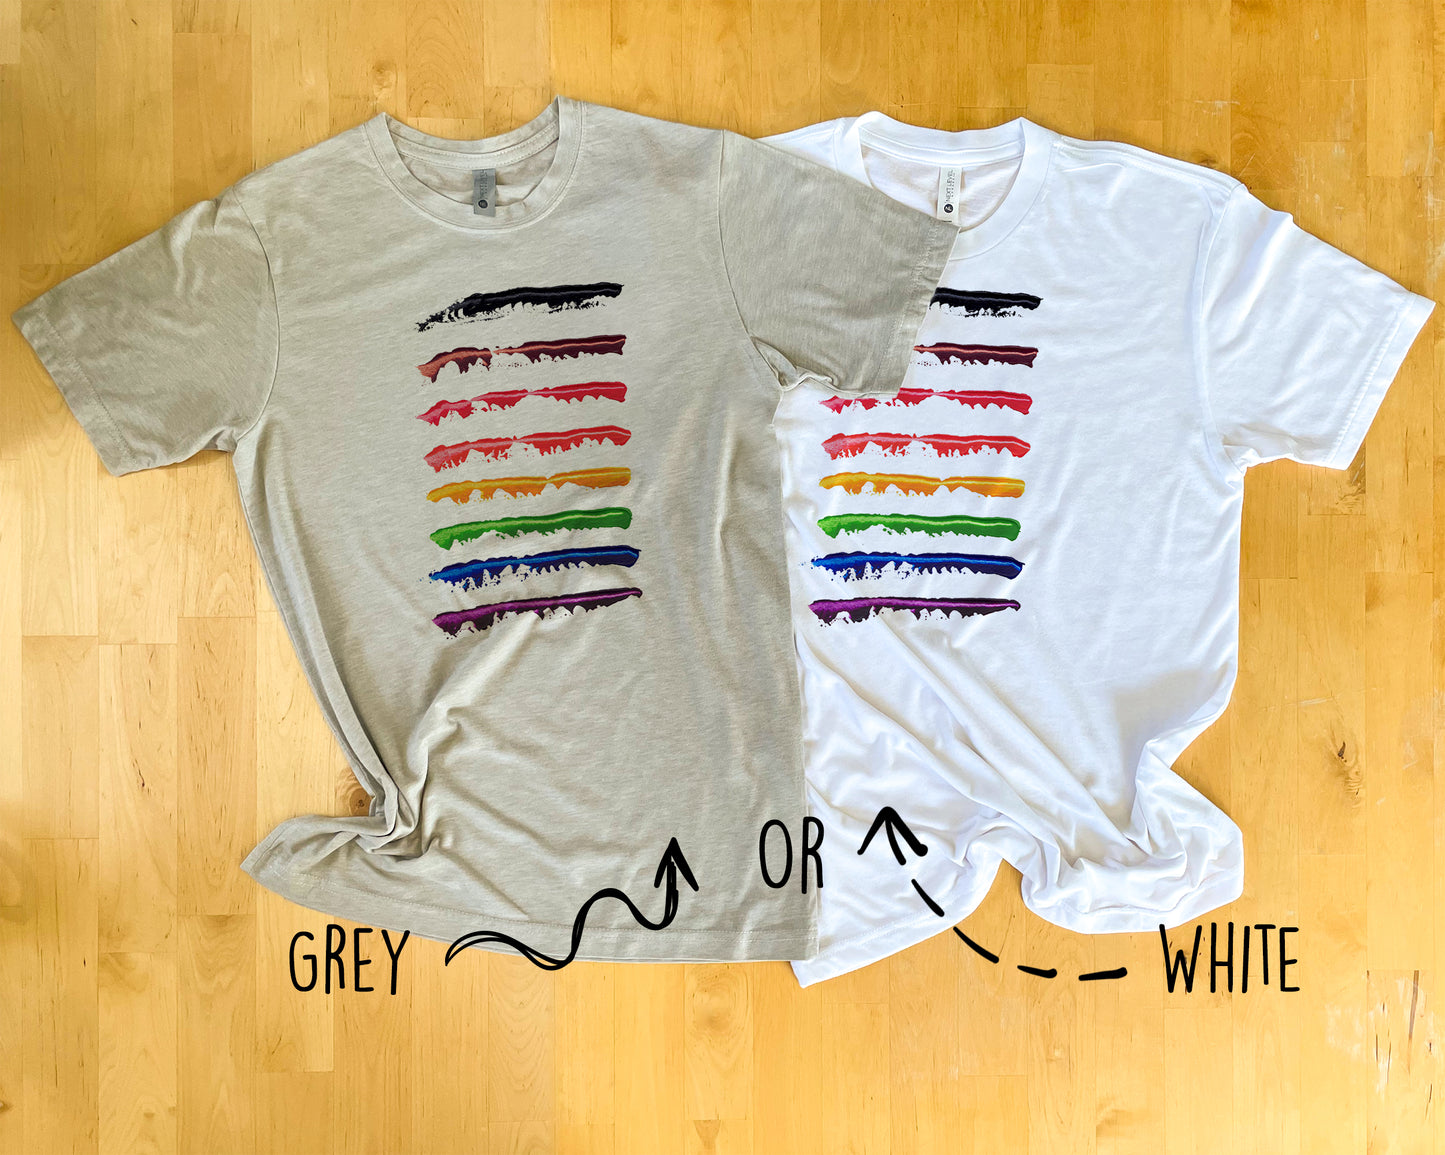 LGBTQ+ Pride Shirt